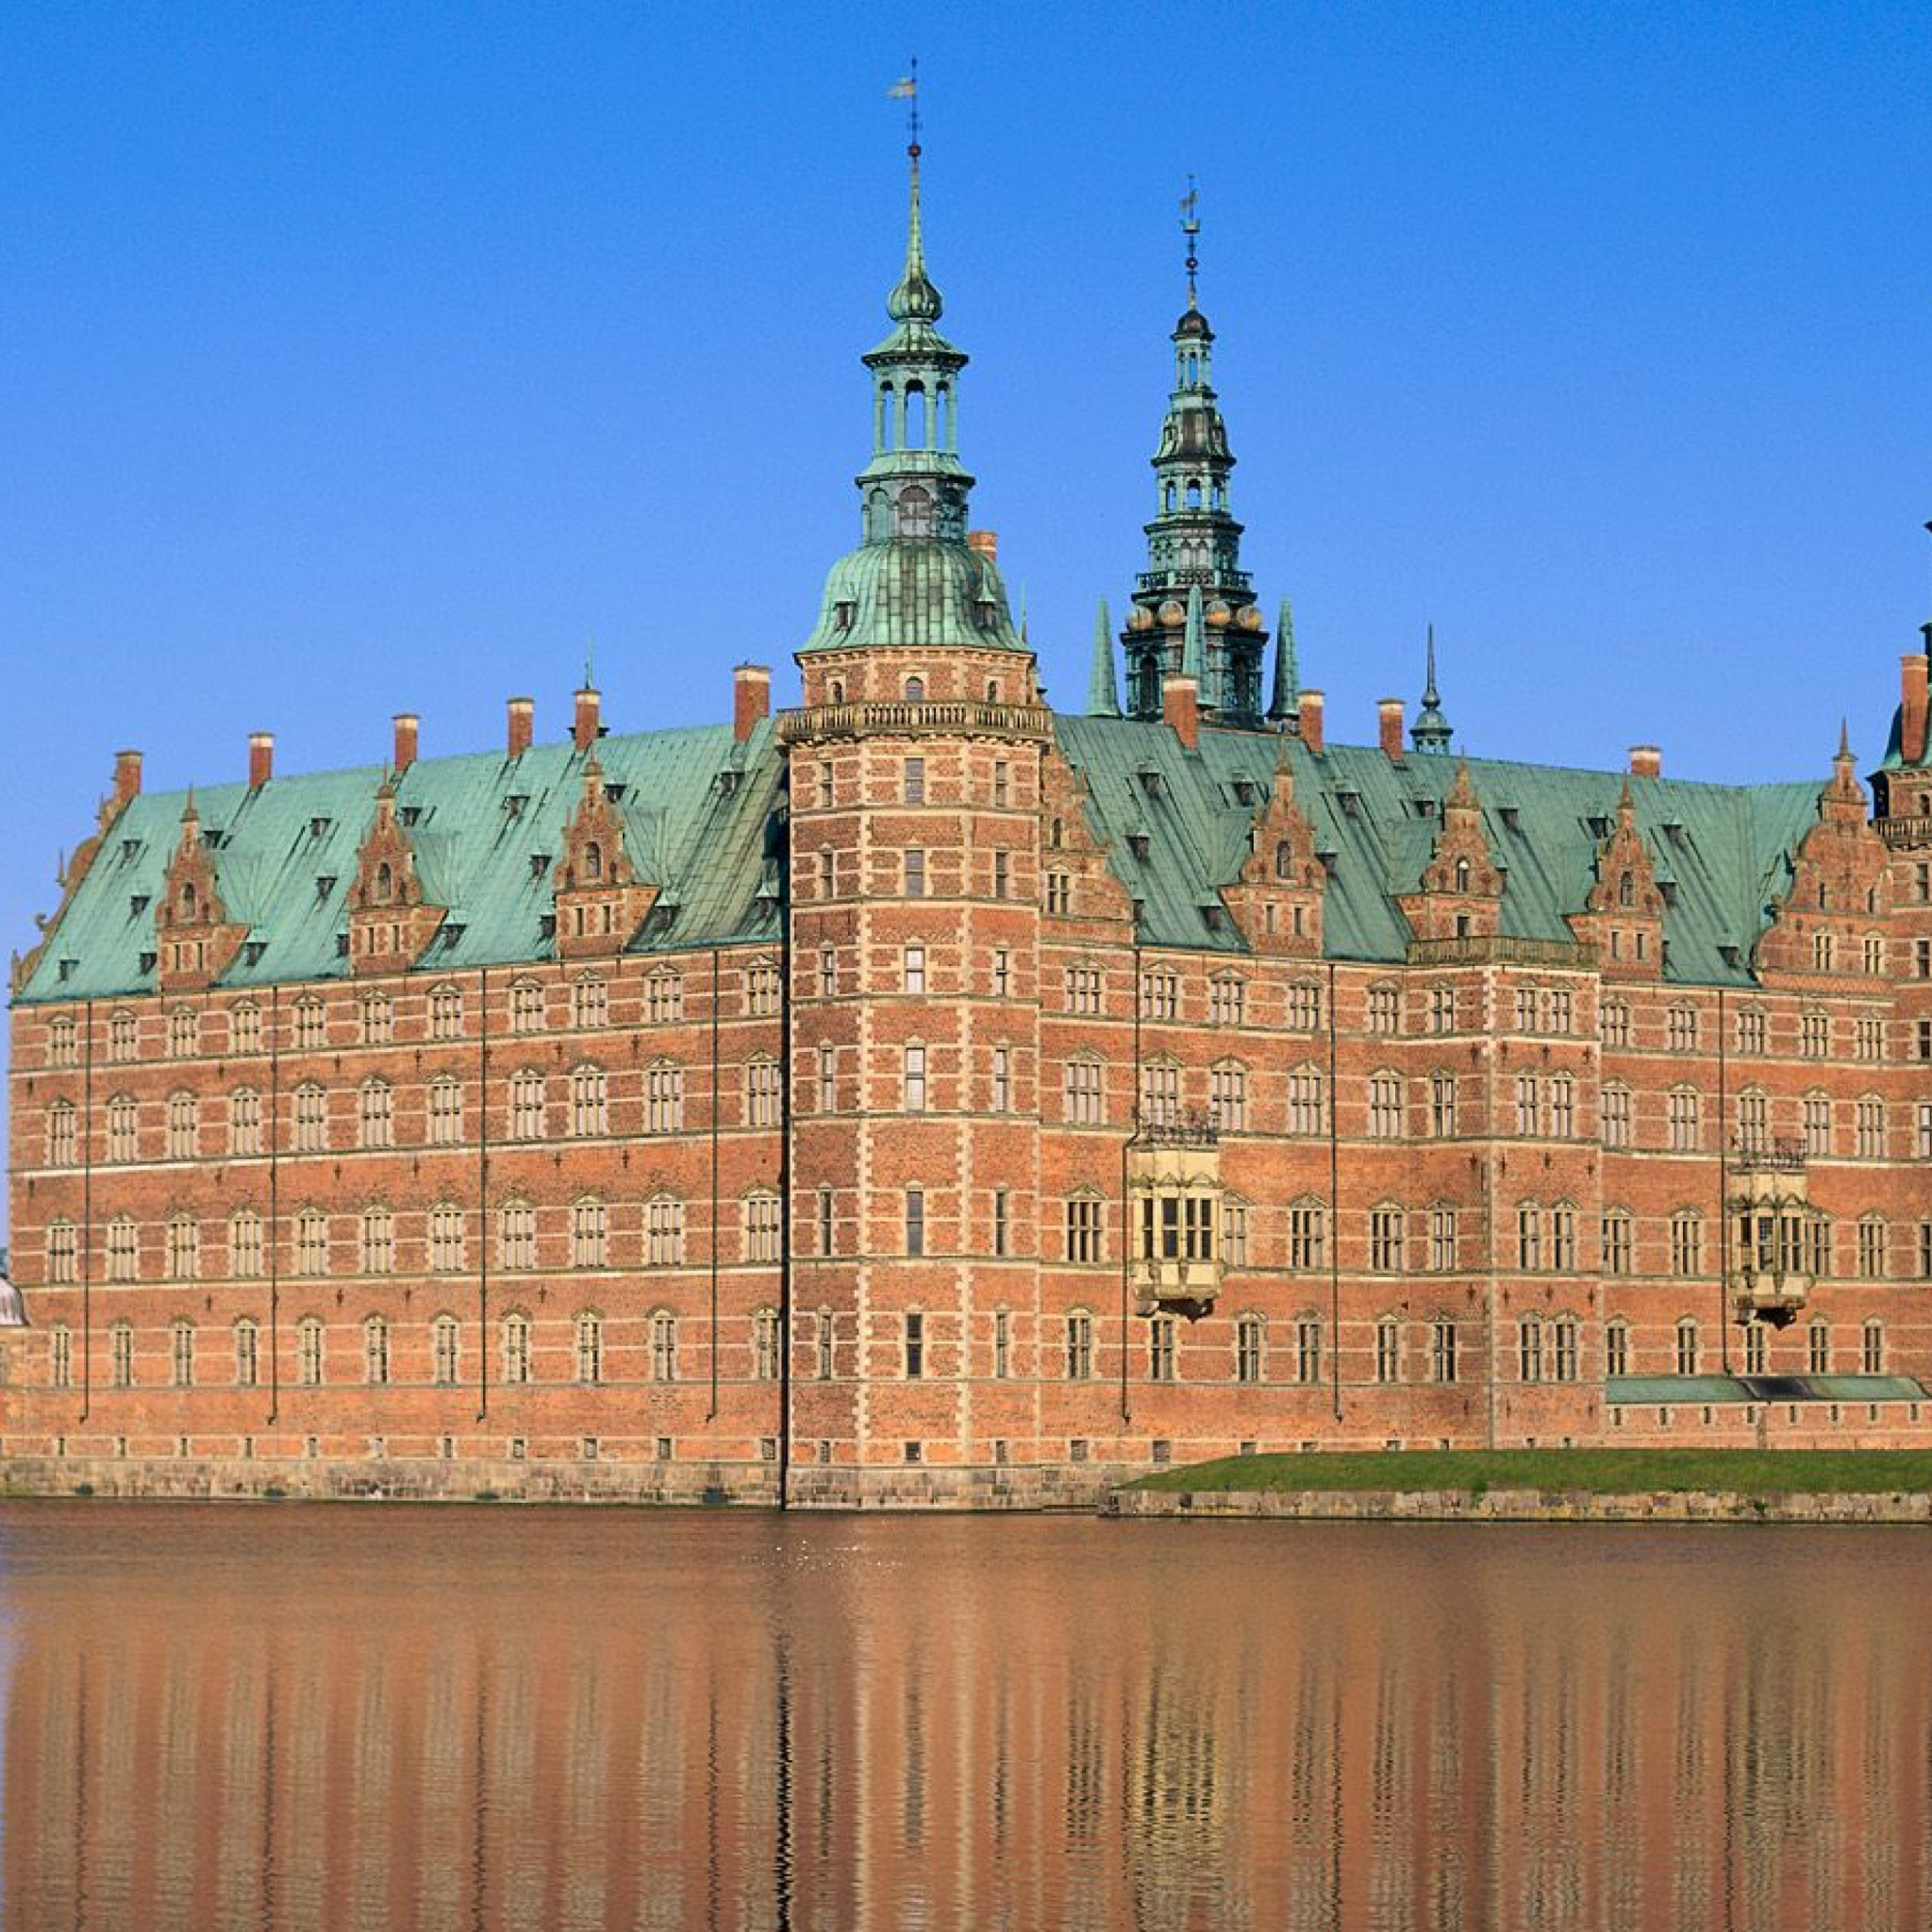 Достопримечательности каждых стран. Дворец Фредериксборг Копенгаген. Замок Фредериксборг (г. Хиллеред).